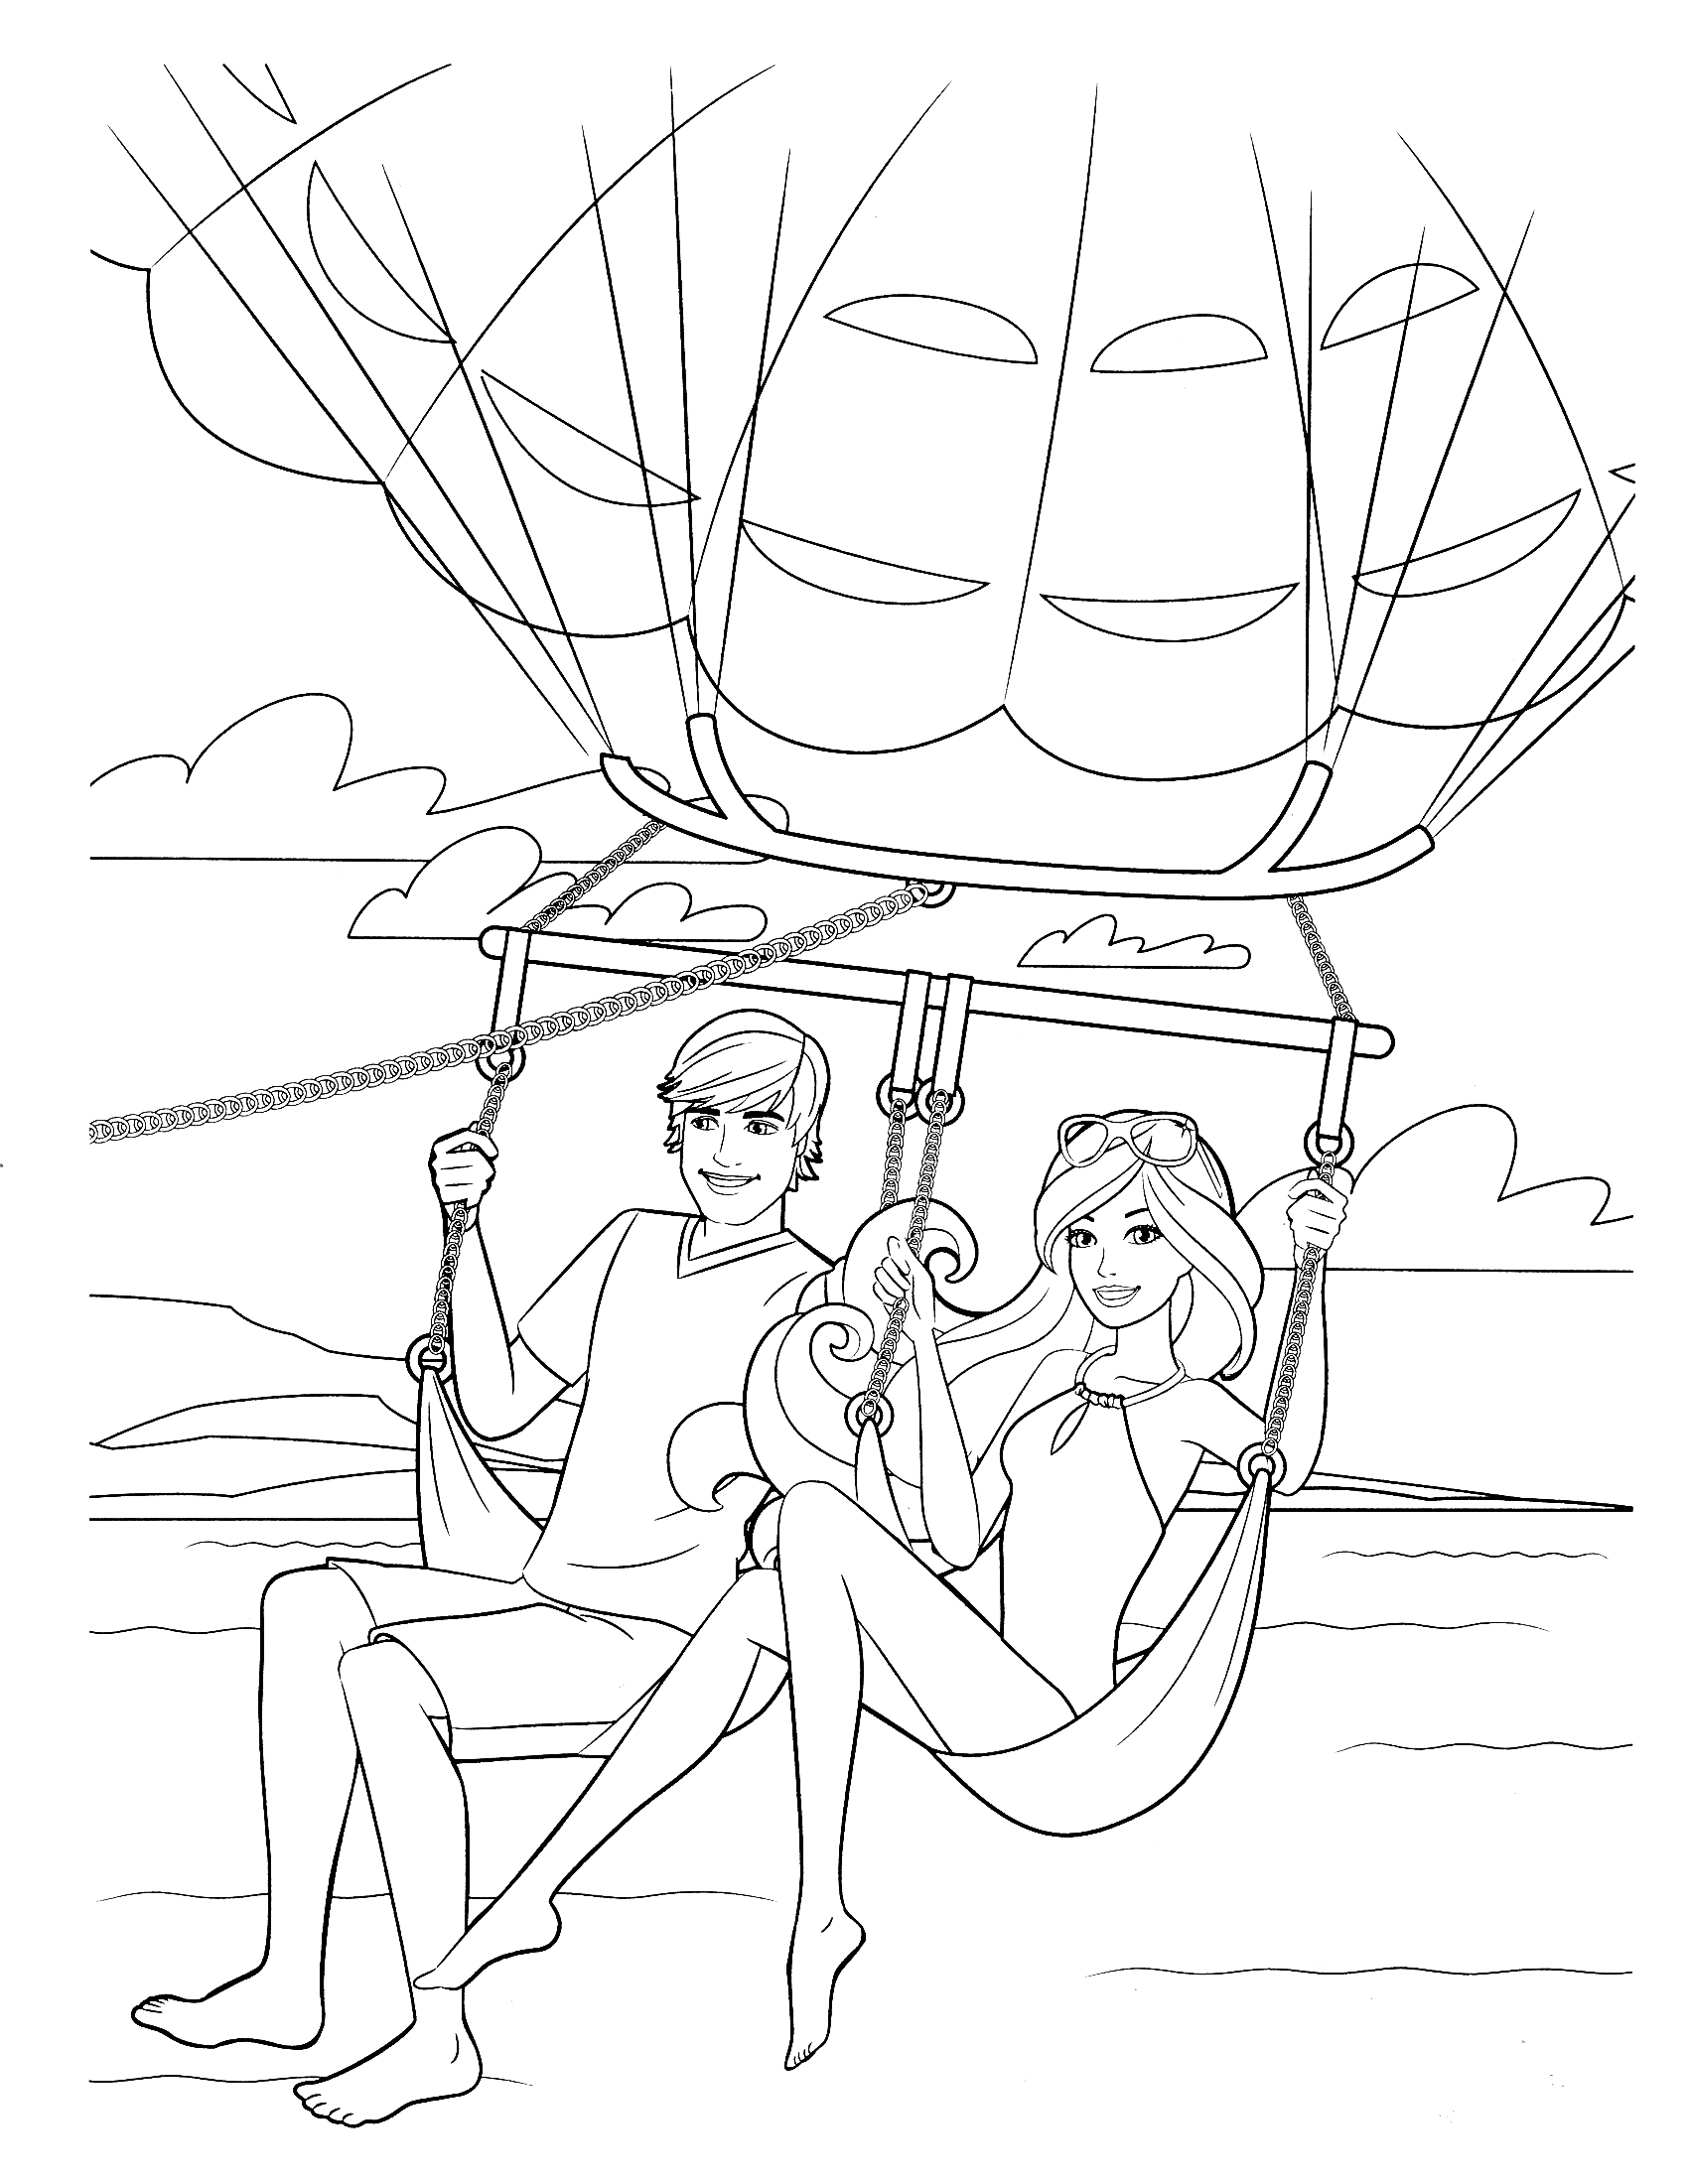 Раскраска Барби и Кен в полете на воздушном шаре над океаном